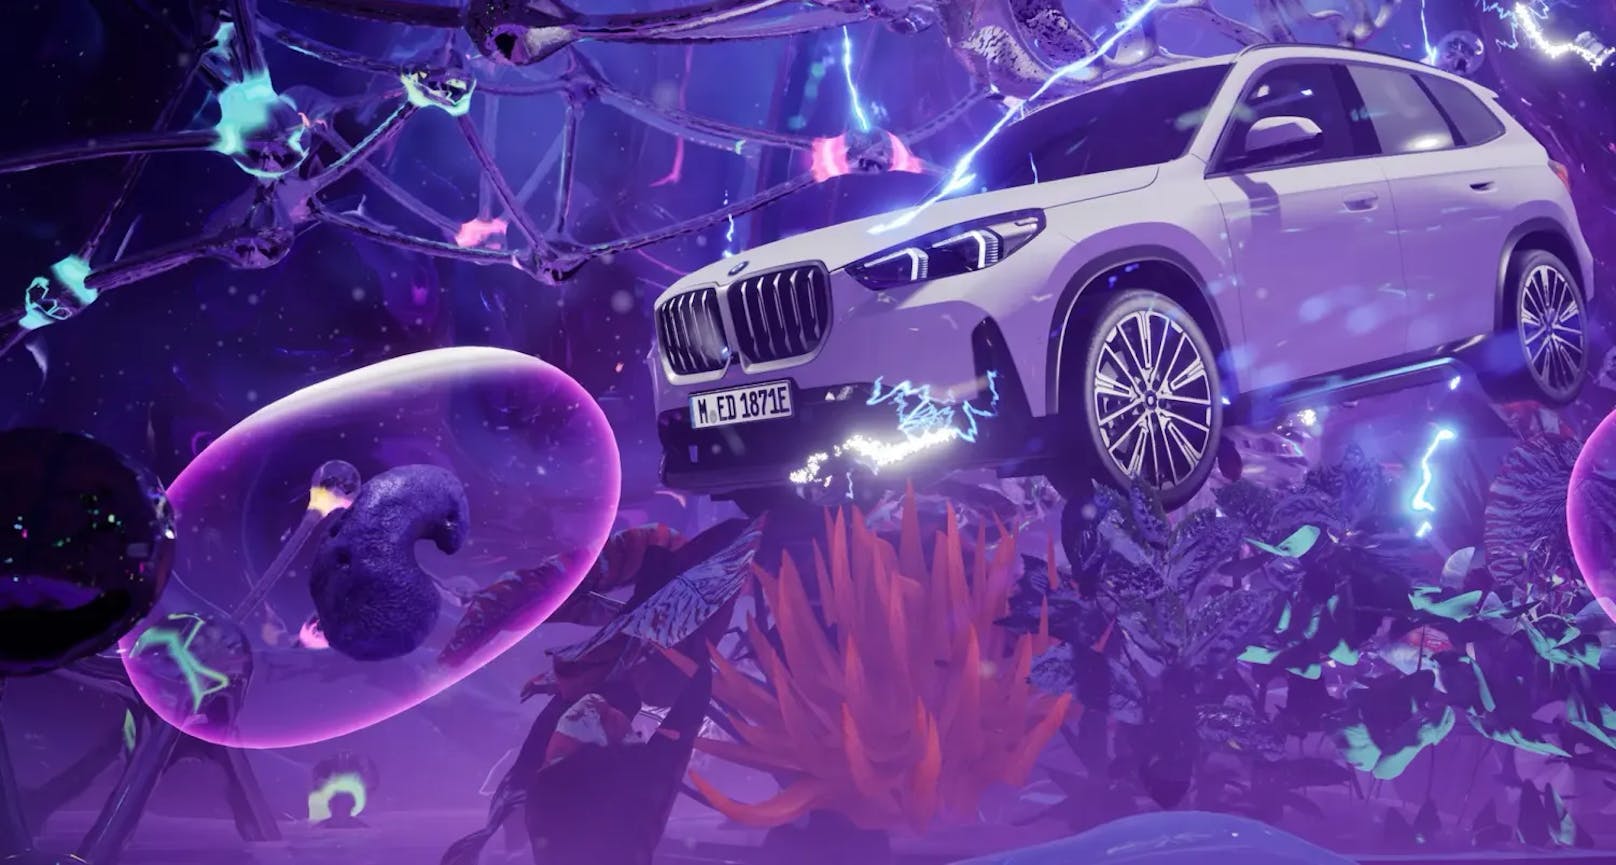 BMW hat gleich eine komplett digitale Welt erschaffen. Im BMW-Metaverse werden regelmäßig neue Modelle präsentiert, die die virtuellen Besucher unter die Lupe nehmen können.